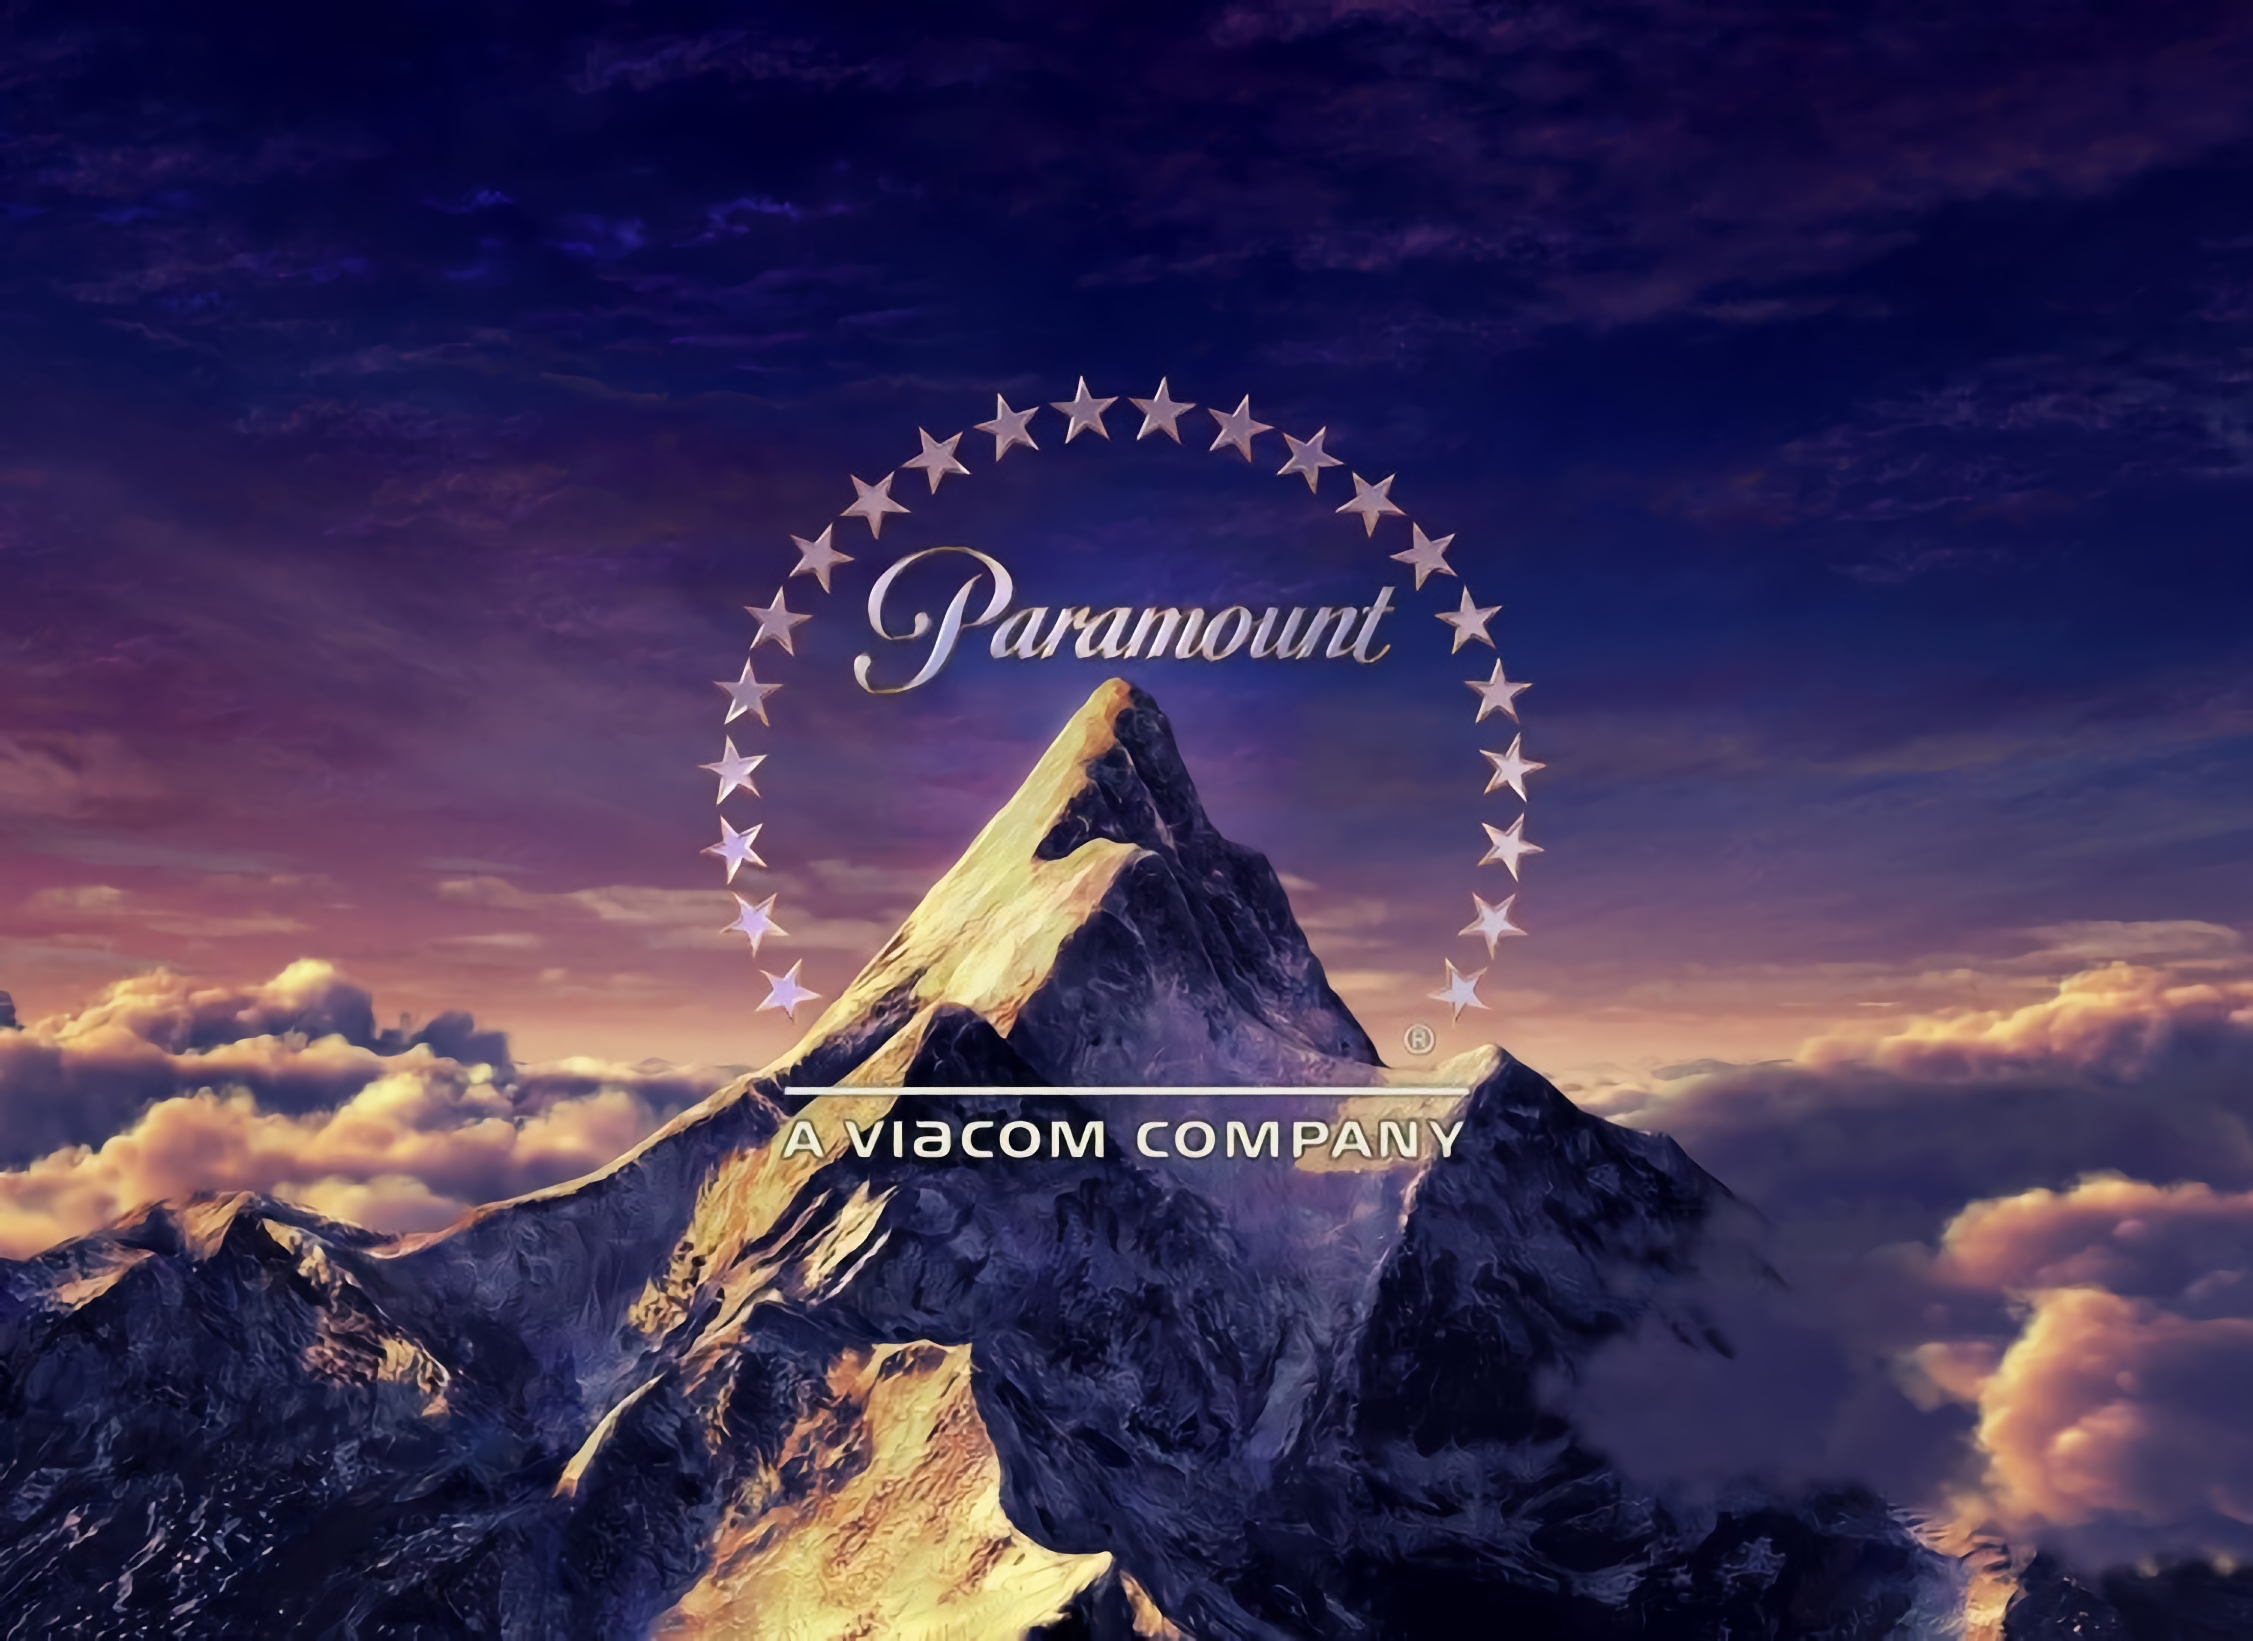 Le studio de cinéma Paramount arrête ses travaux en Russie